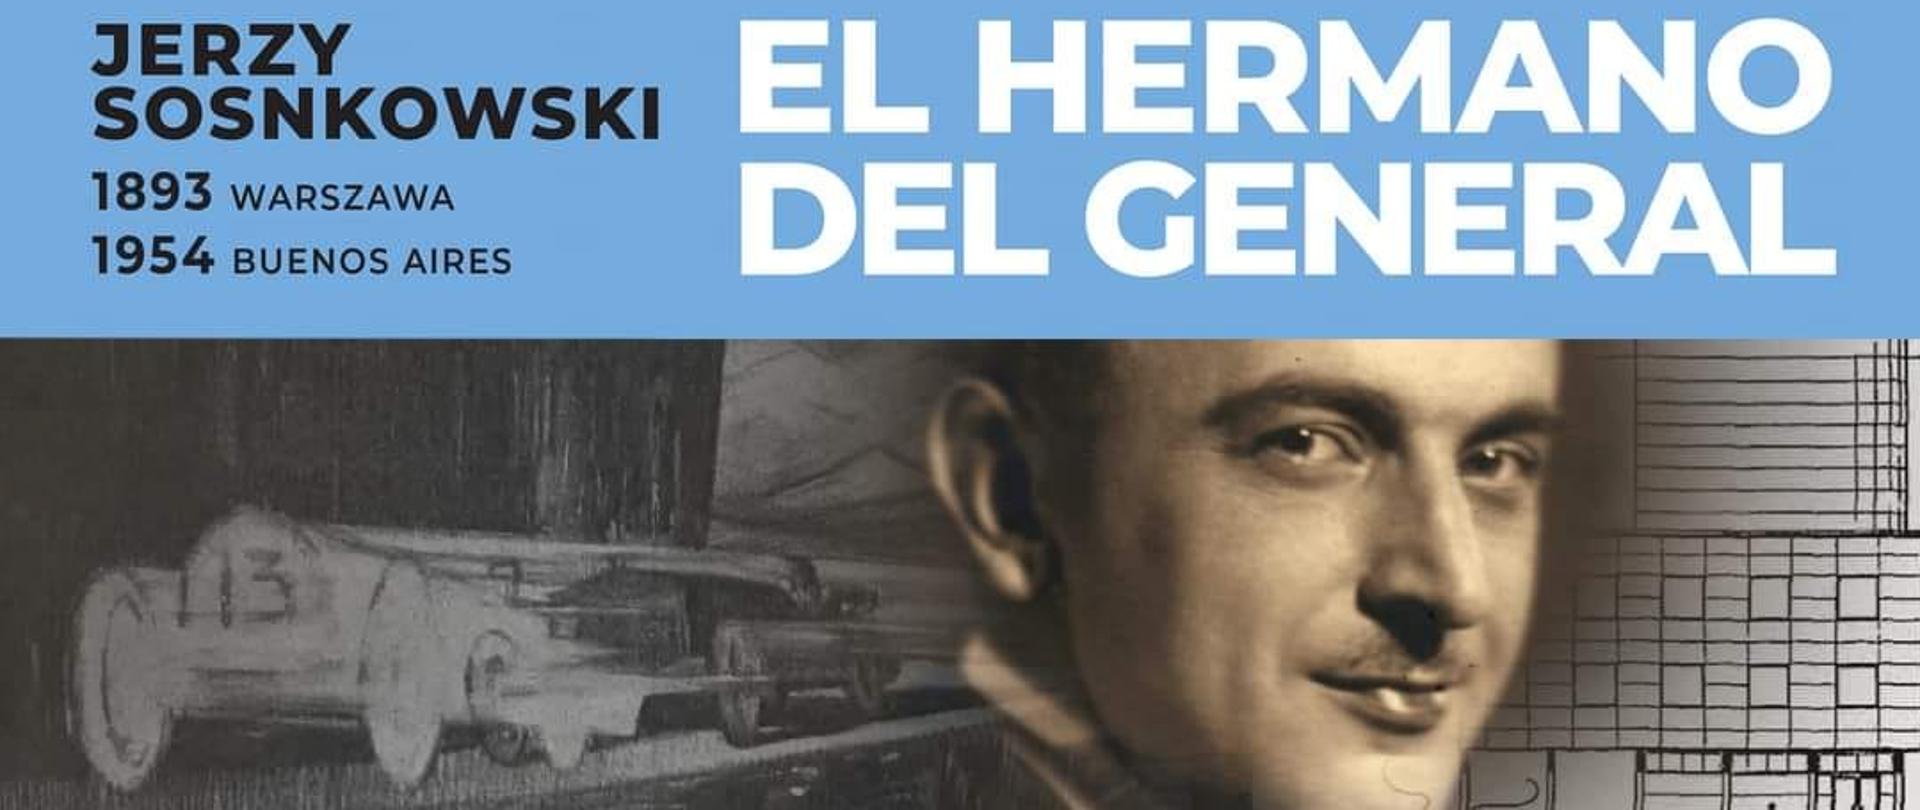 Wernisaż wystawy poświęcony postaci Jerzego Sosnkowskiego odbył się w stolicy Argentyny.